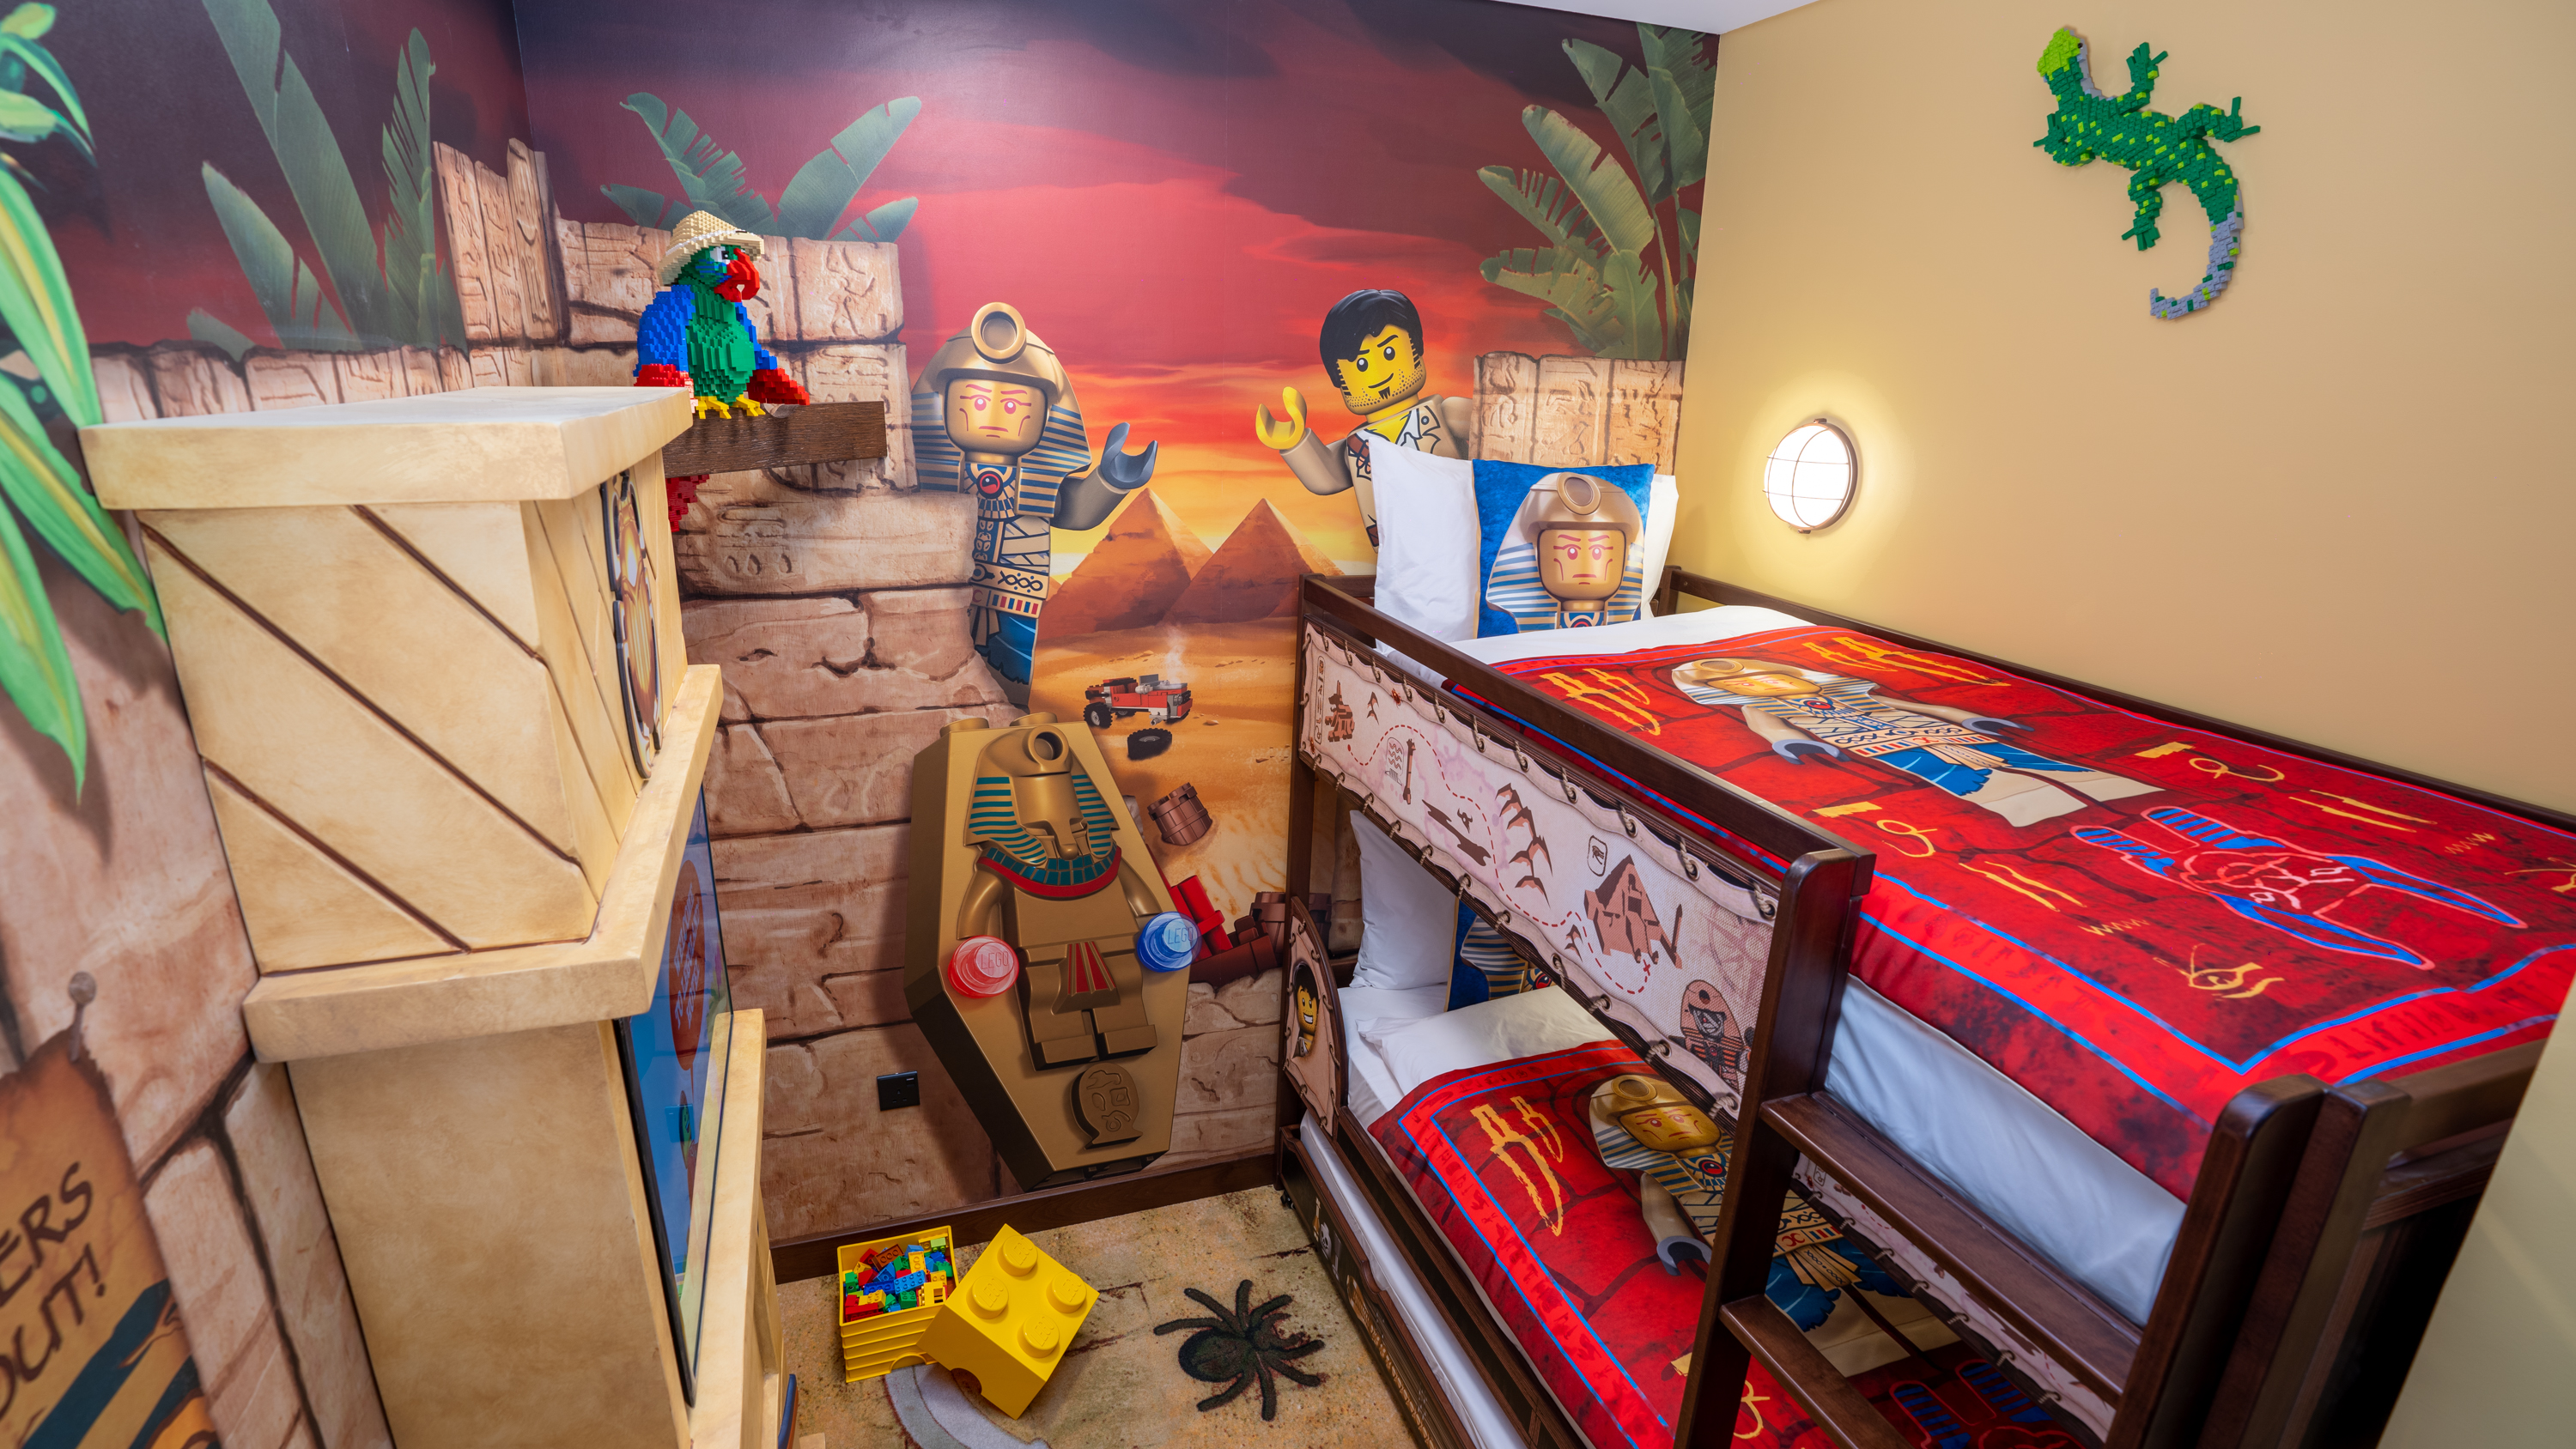 Legoland Hotel Room Interior Adventure 12